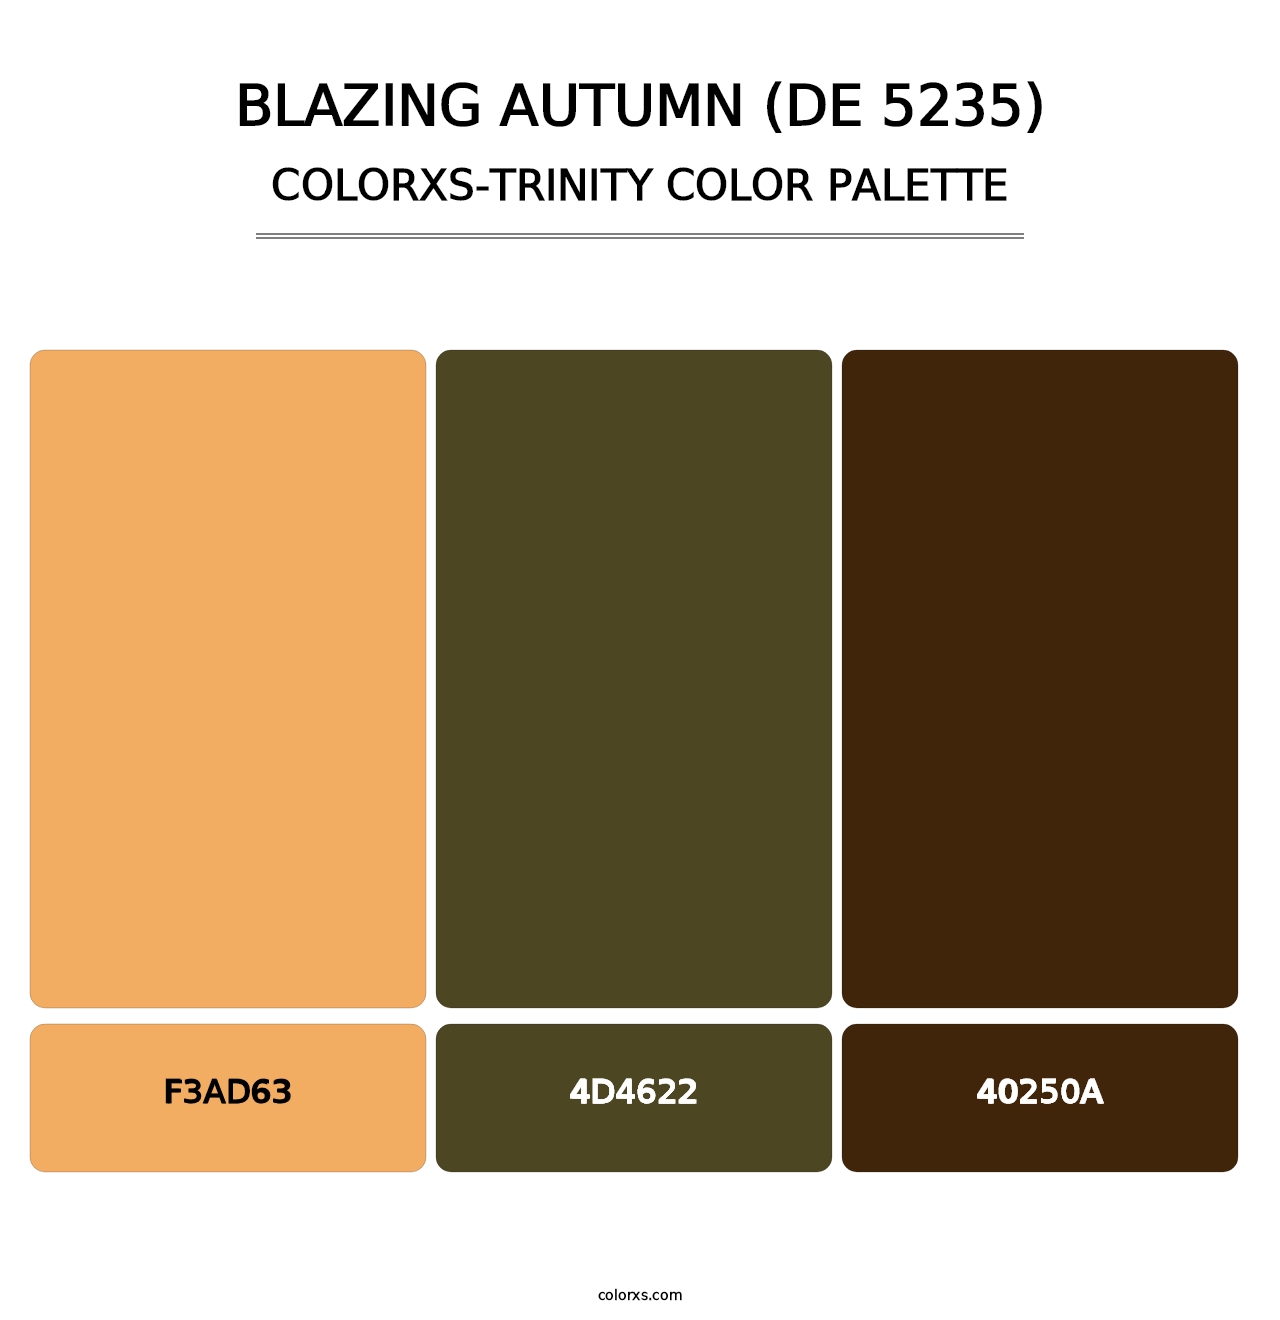 Blazing Autumn (DE 5235) - Colorxs Trinity Palette